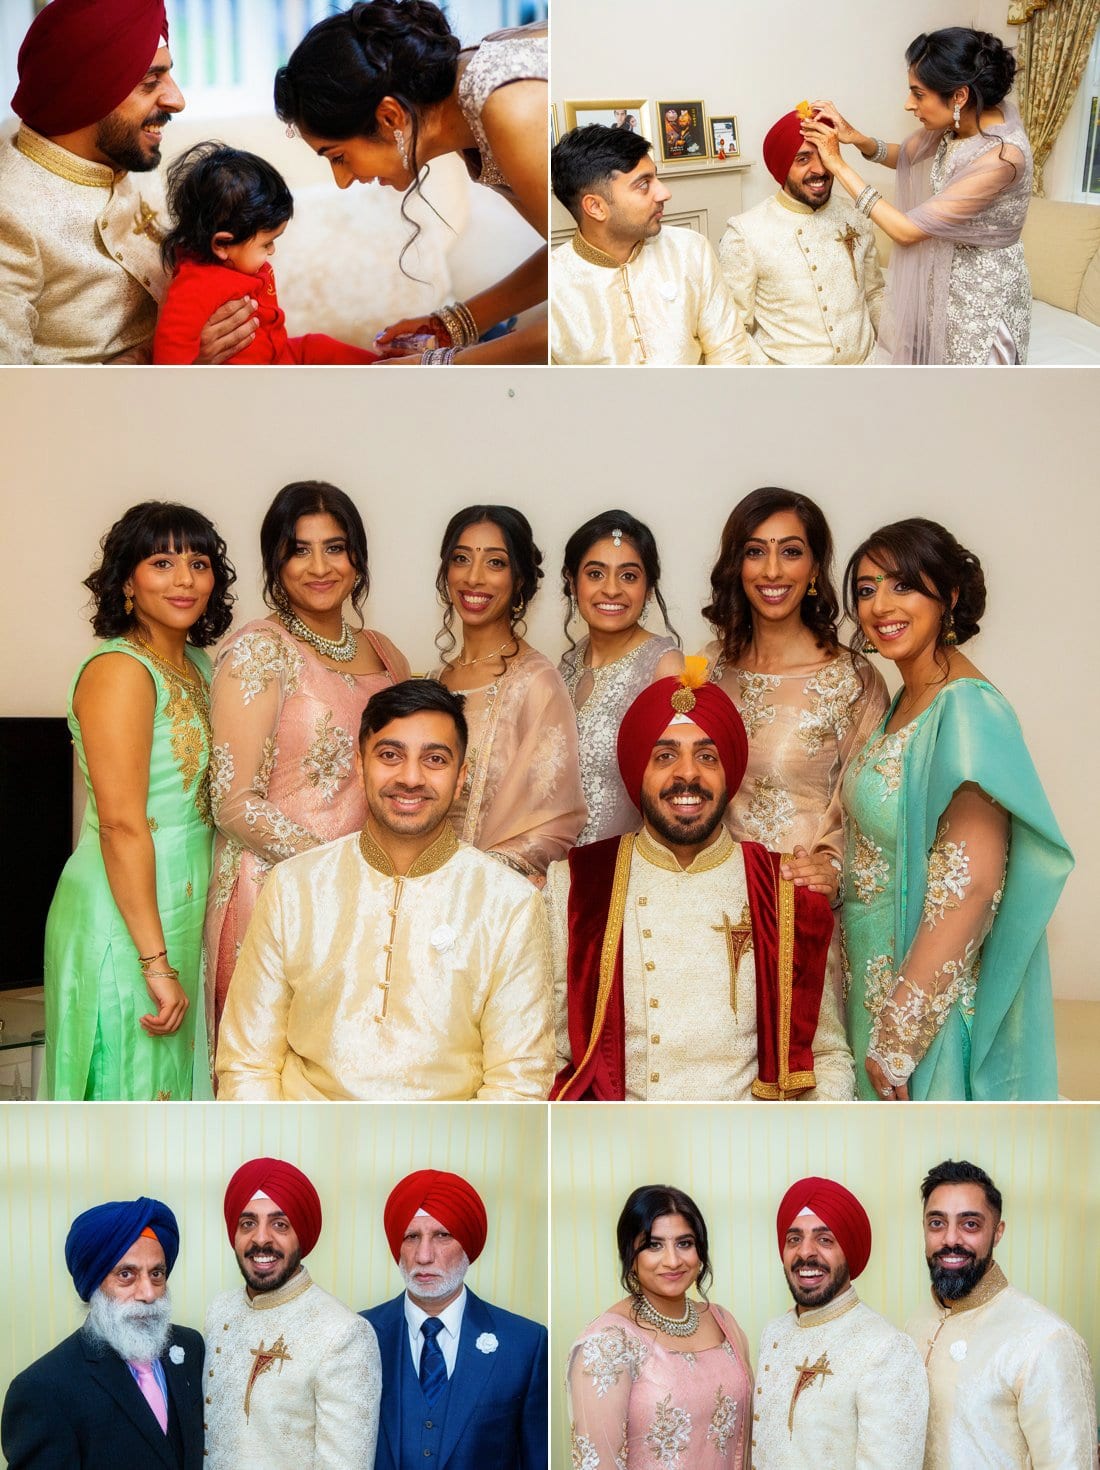 Sikh Wedding Photography at Chateau Impney 4 2